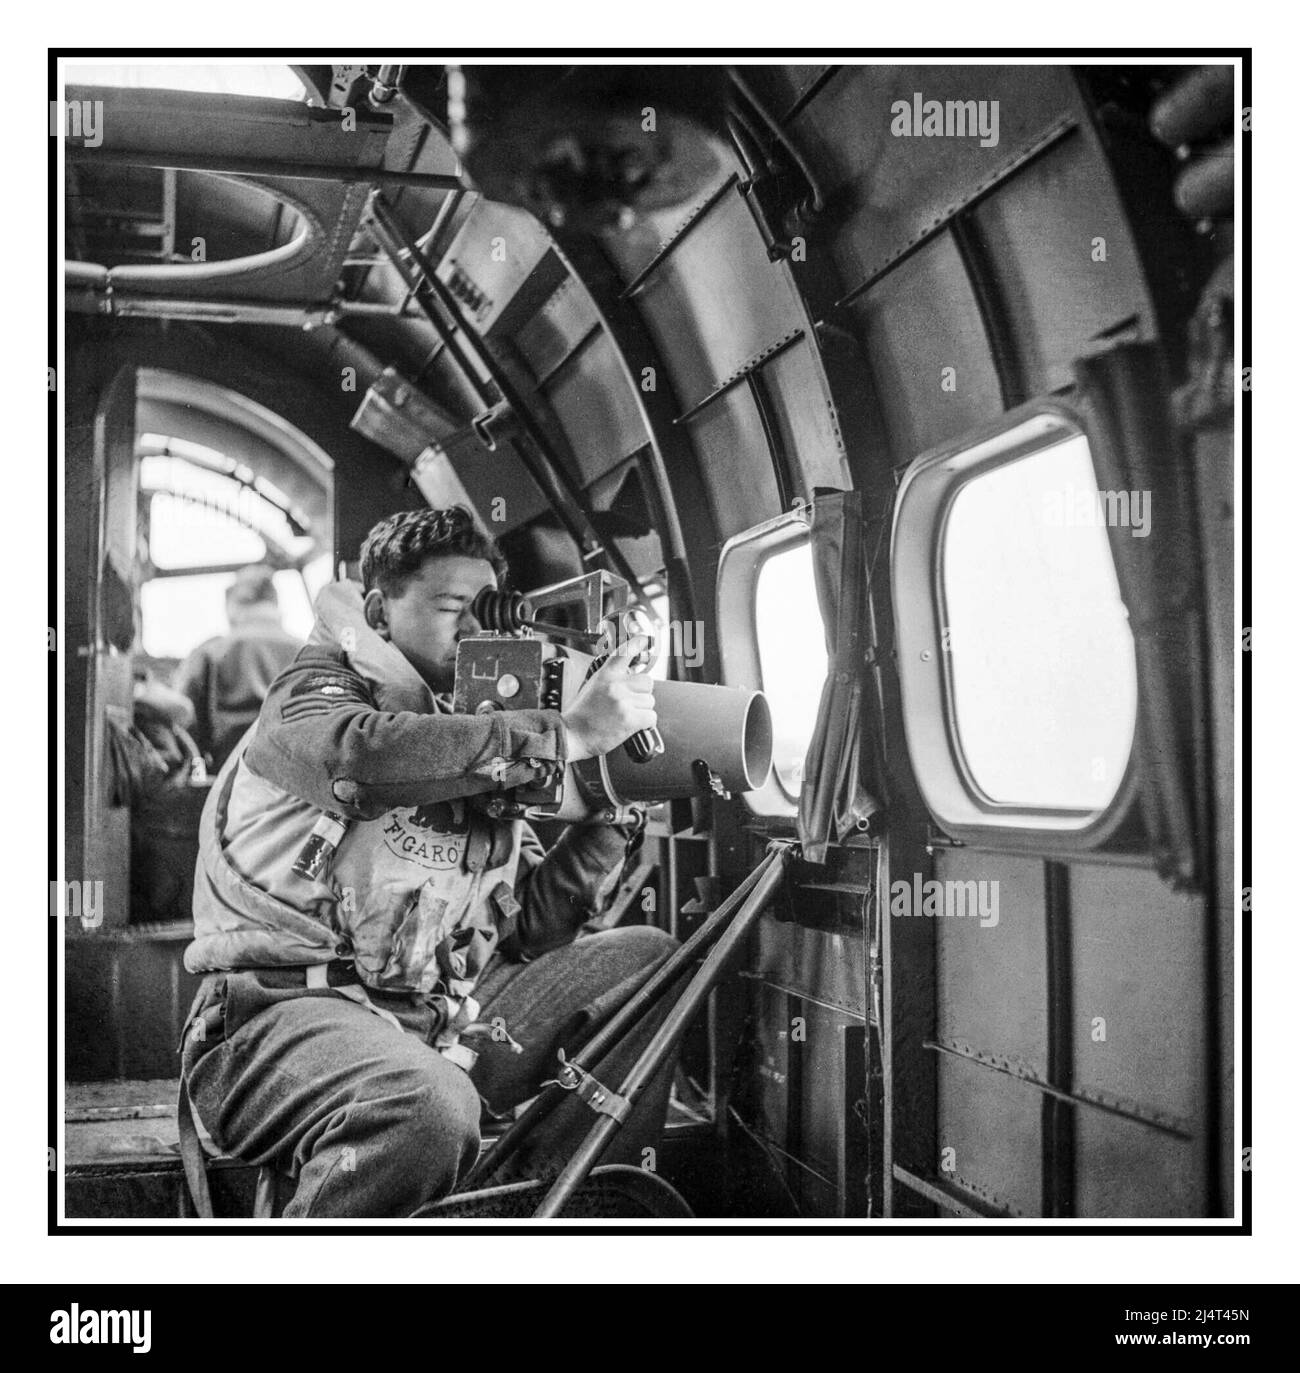 WW2 tripulante de reconocimiento de la RAF con cámara a bordo de un Comando Coastal de la RAF Lockheed Hudson del Escuadrón nº 269, utilizando una cámara F.24 para el reconocimiento durante una patrulla de hielo desde Kaldadarnes, Islandia, 5 de mayo de 1942. Segunda Guerra Mundial Segunda Guerra Mundial. El reconocimiento aéreo es un reconocimiento para fines militares o estratégicos que se realiza utilizando aviones de reconocimiento. El papel del reconocimiento puede cumplir una variedad de requisitos, incluyendo la localización de artillería, la colección de inteligencia de imágenes, y la observación de manouvers enemigos. Foto de stock